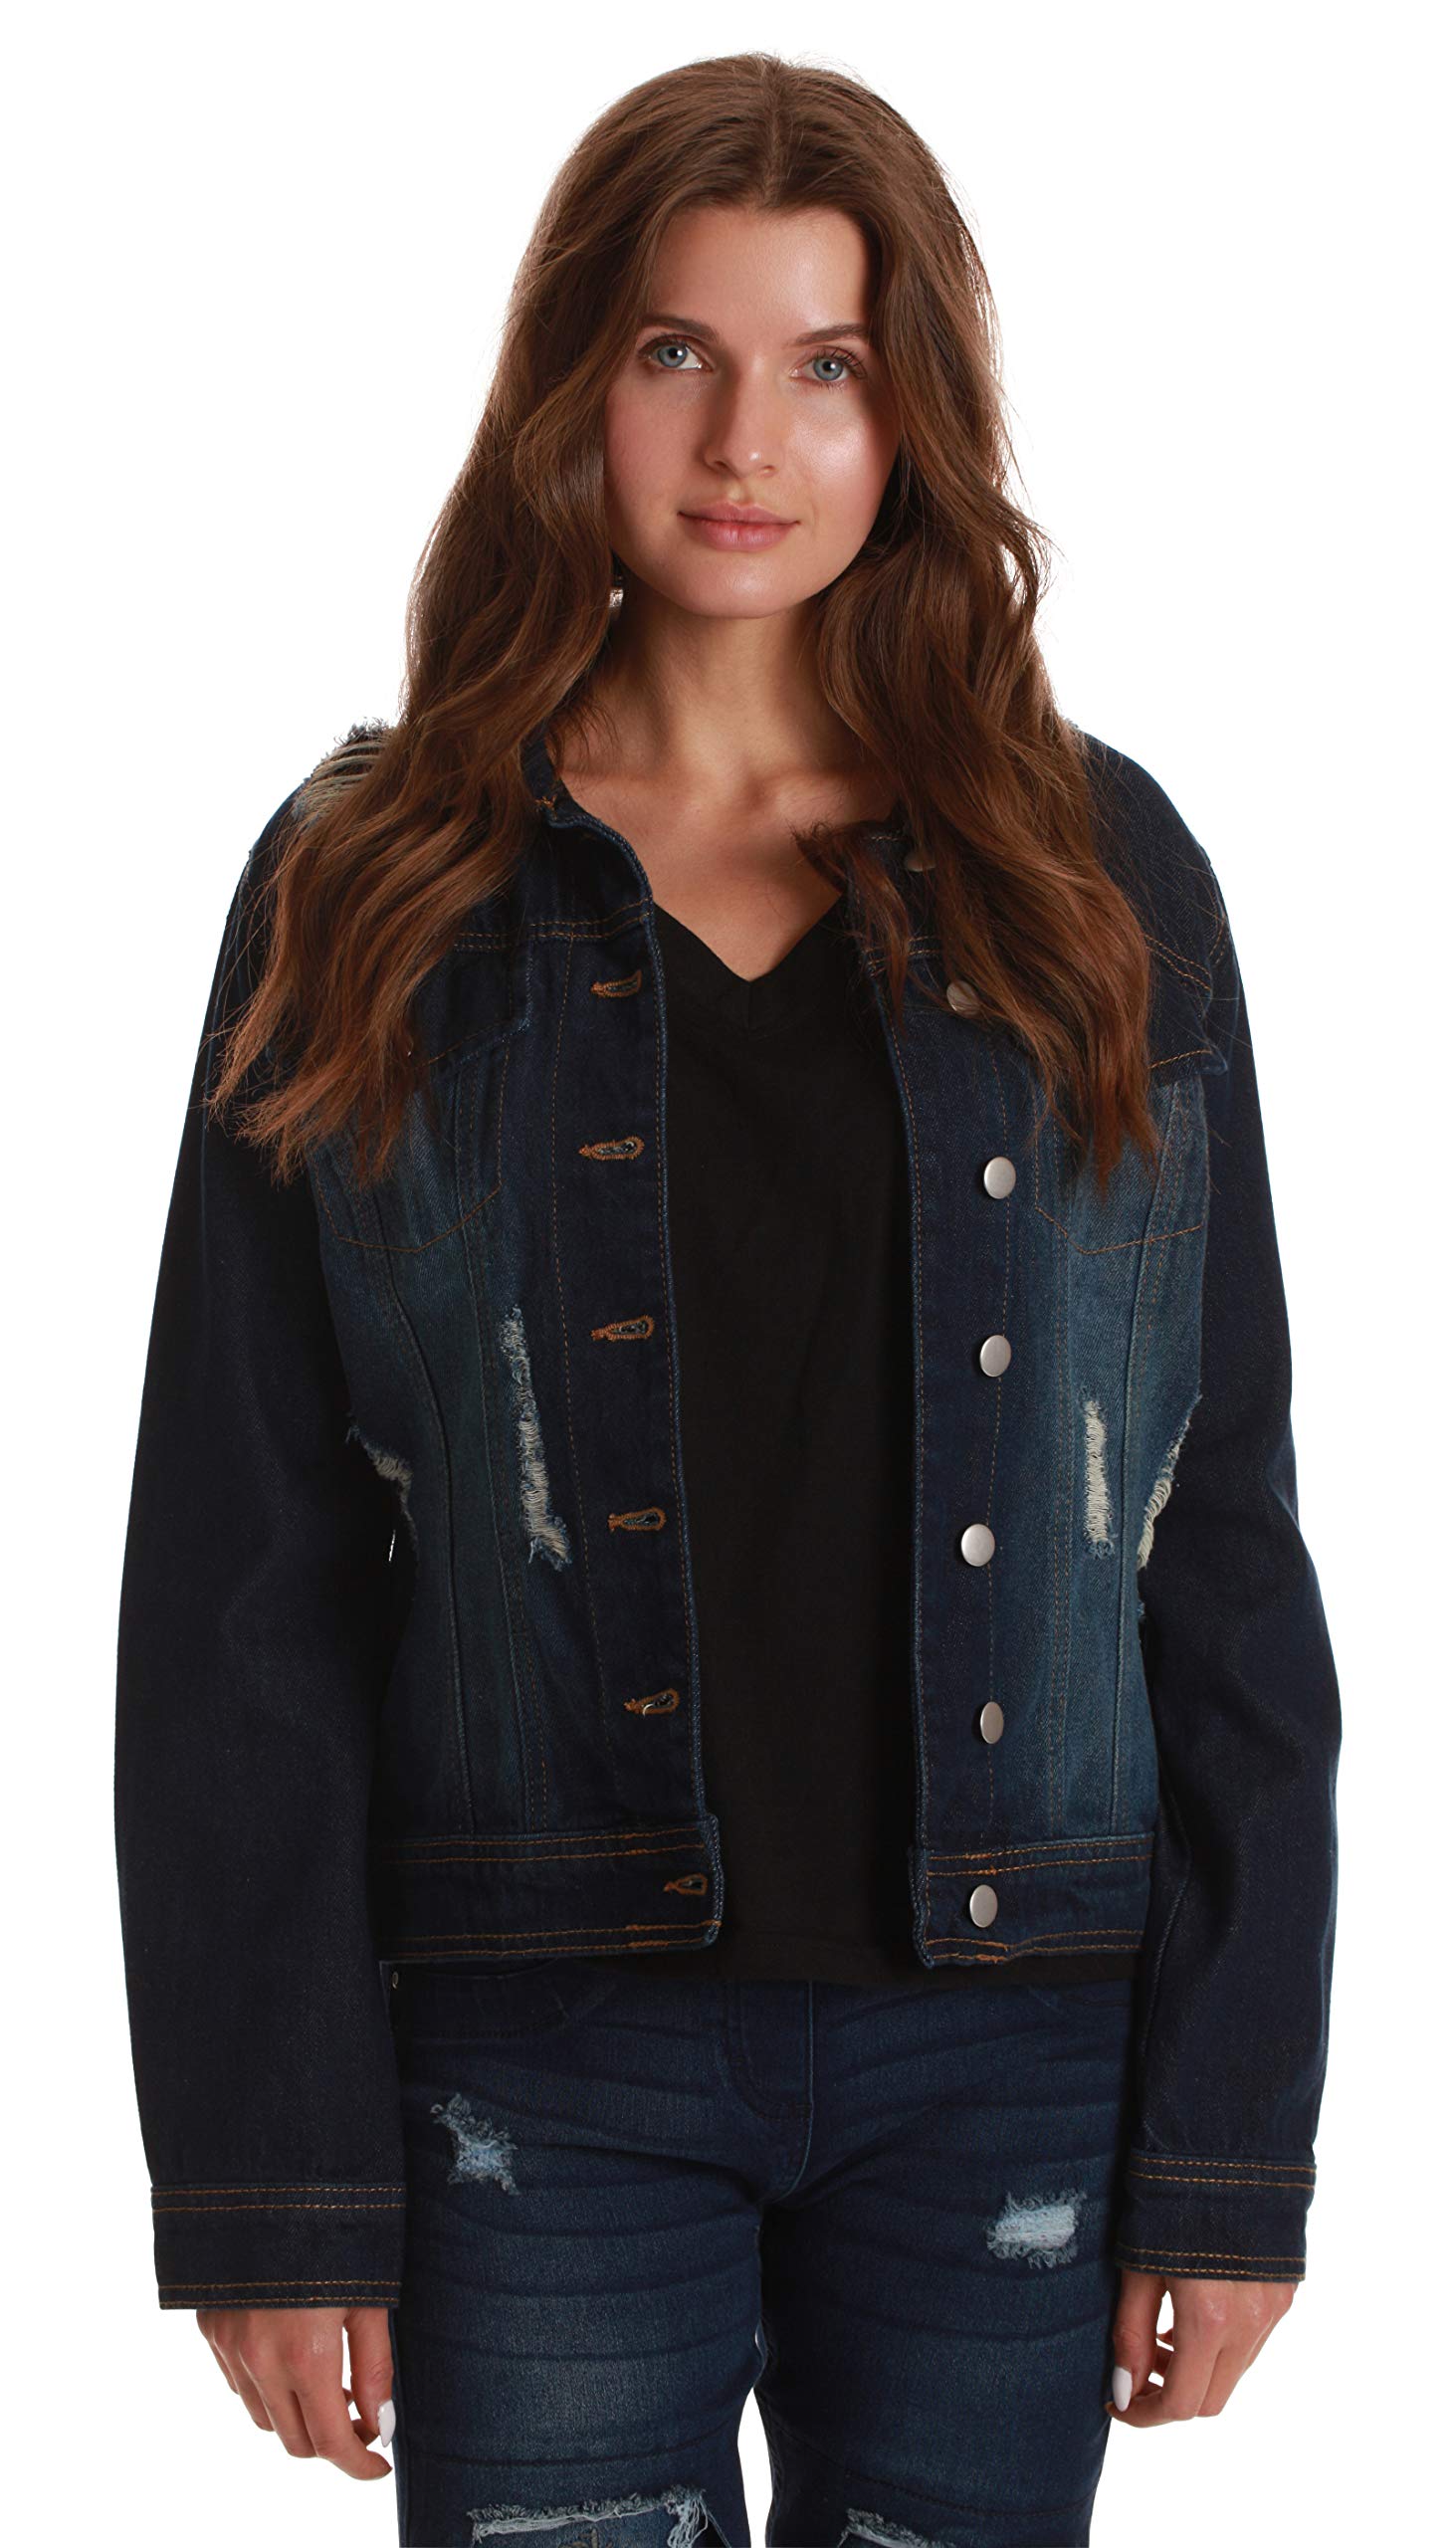 Just Love Denim Jackets for Women 6879-LTDEN-XXXL (Dark Denim, Large) - image 2 of 3